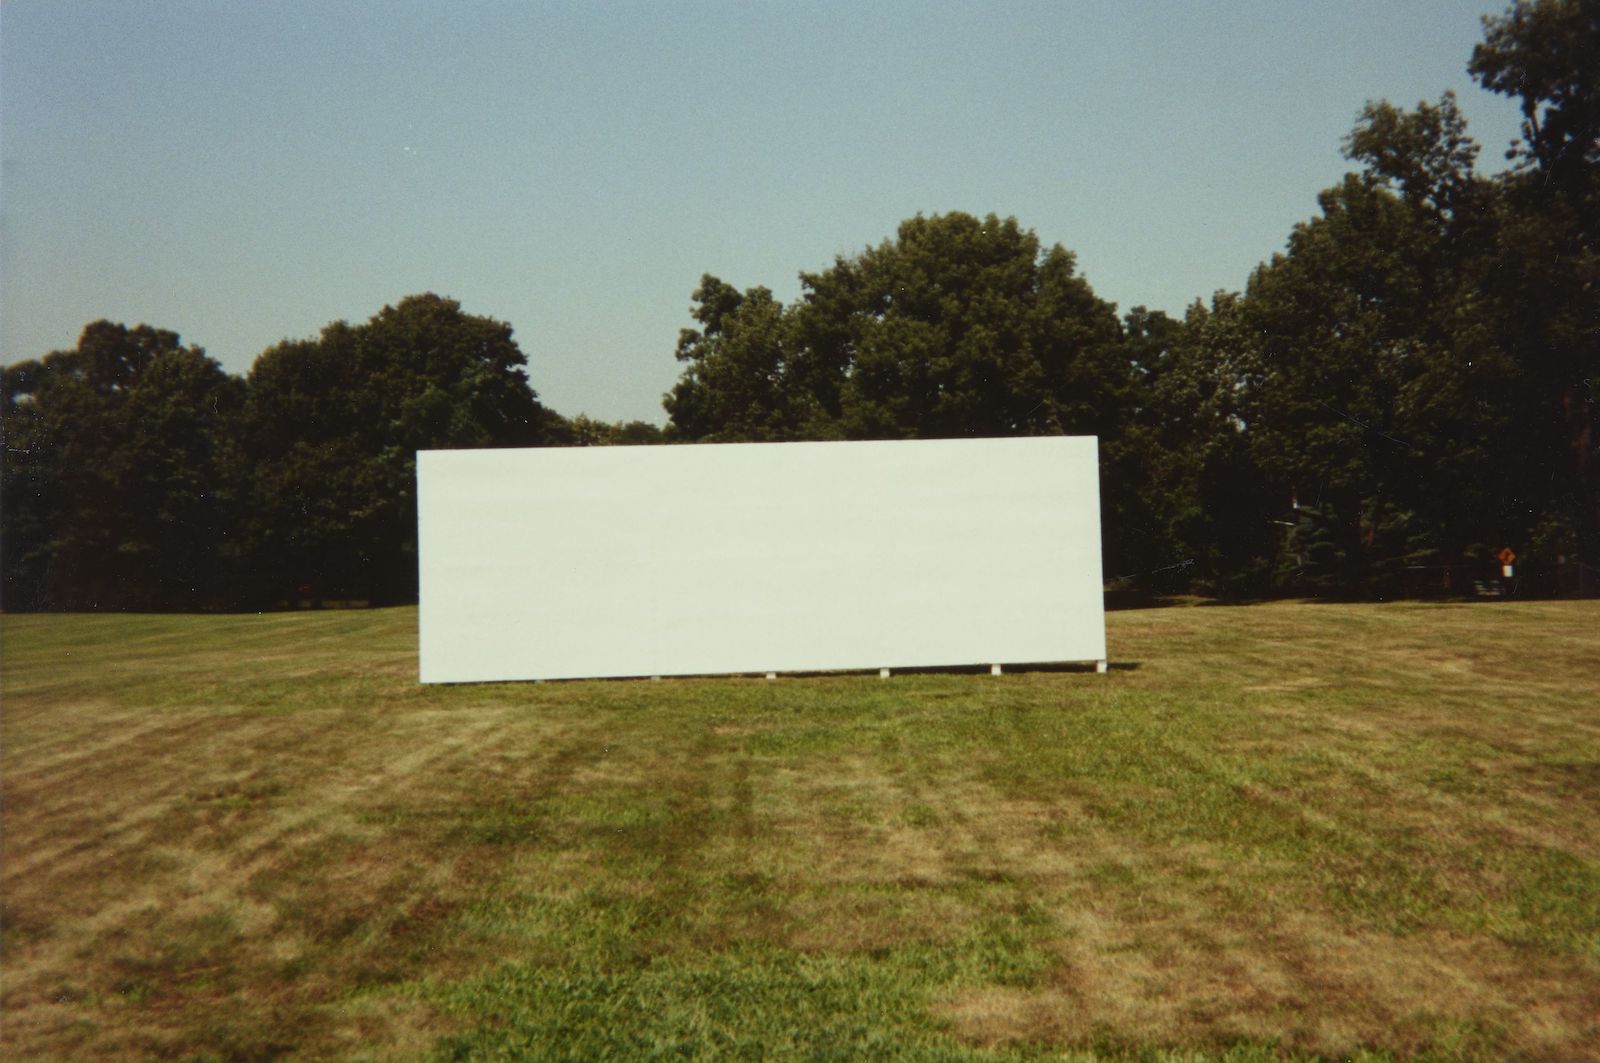 An empty billboard in a deserted field